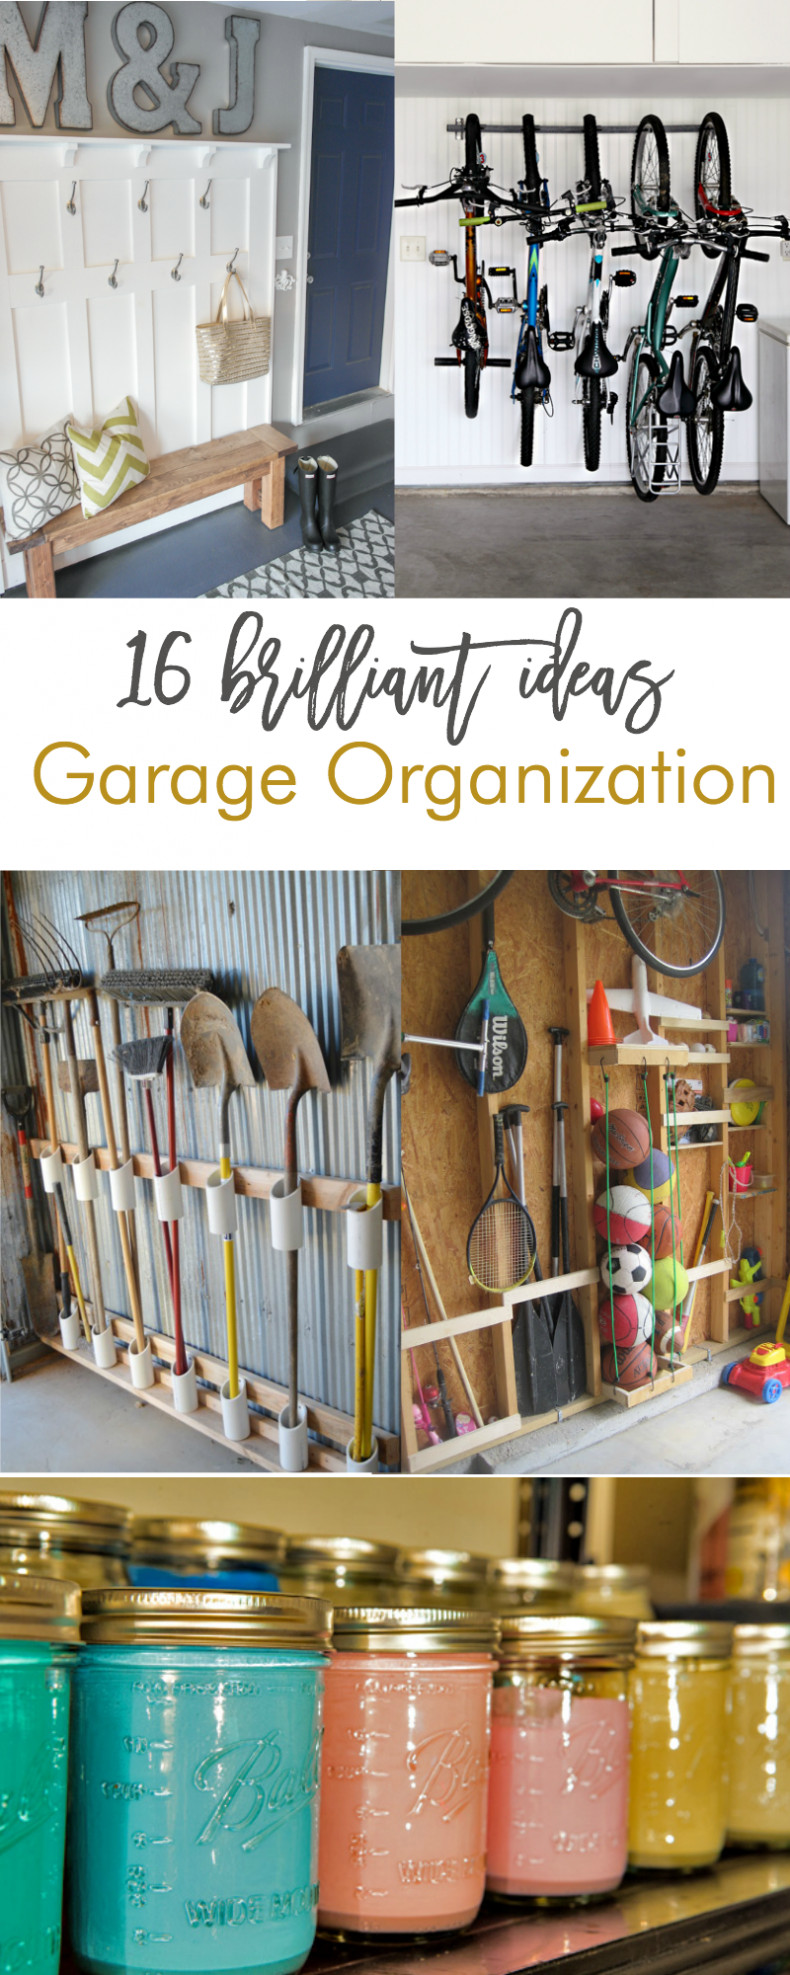 Garage Organization Ideas Diy
 16 Brilliant DIY Garage Organization Ideas